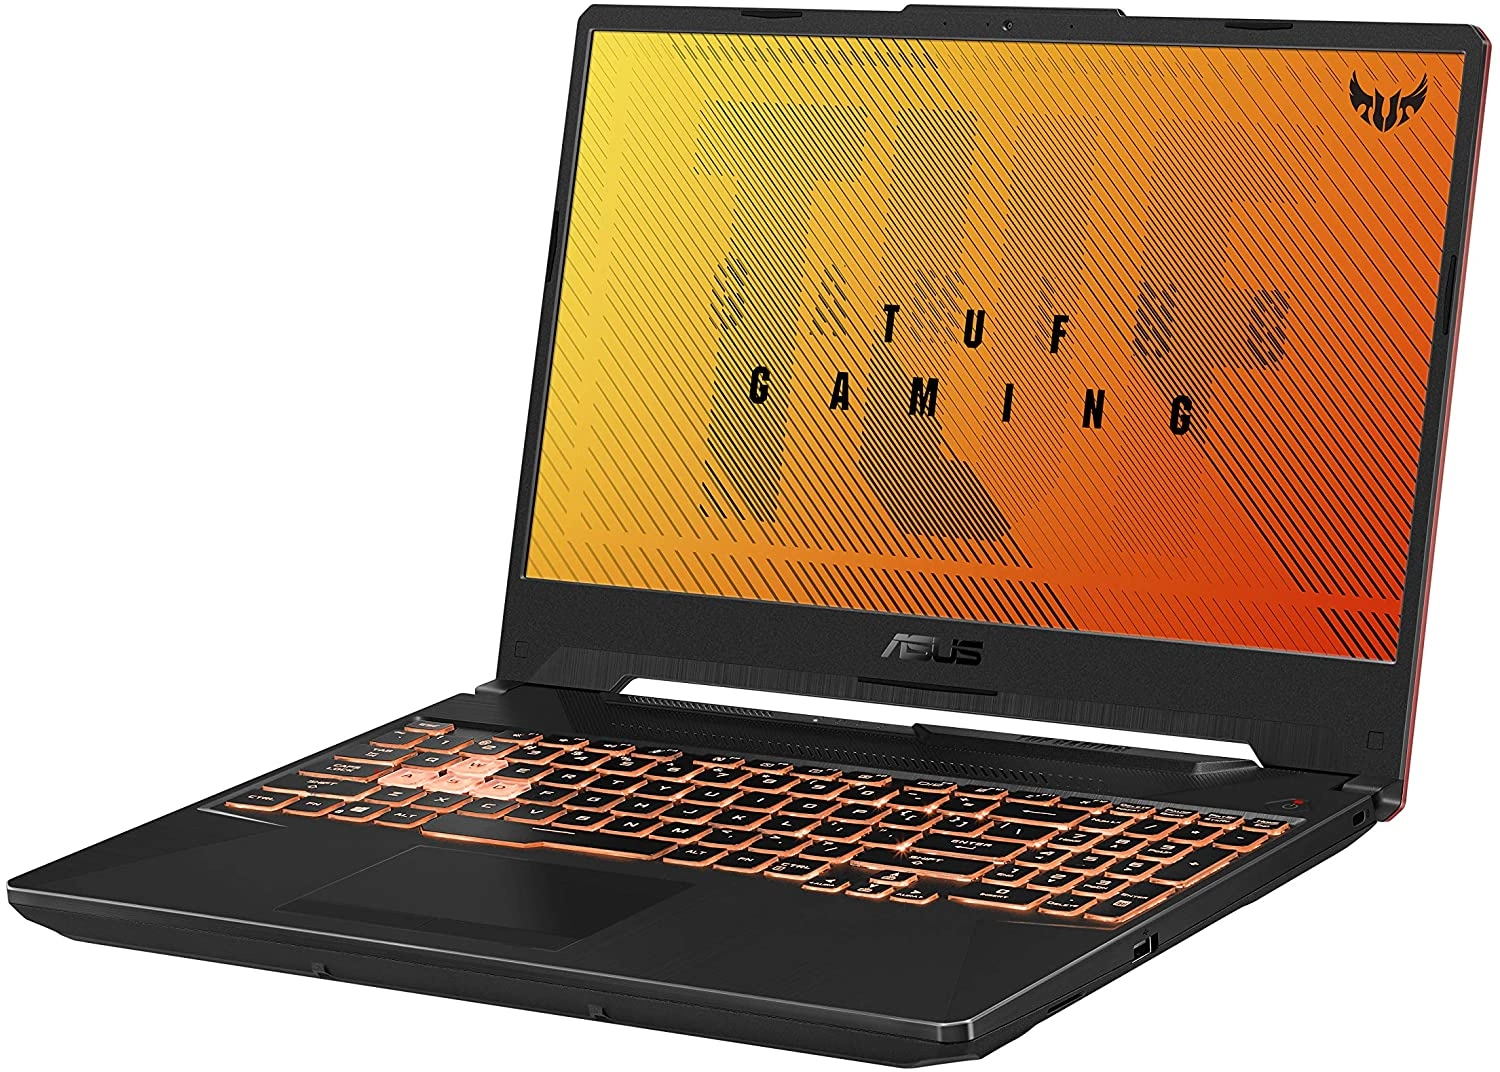 ASUS TUF Gaming A15 laptop image